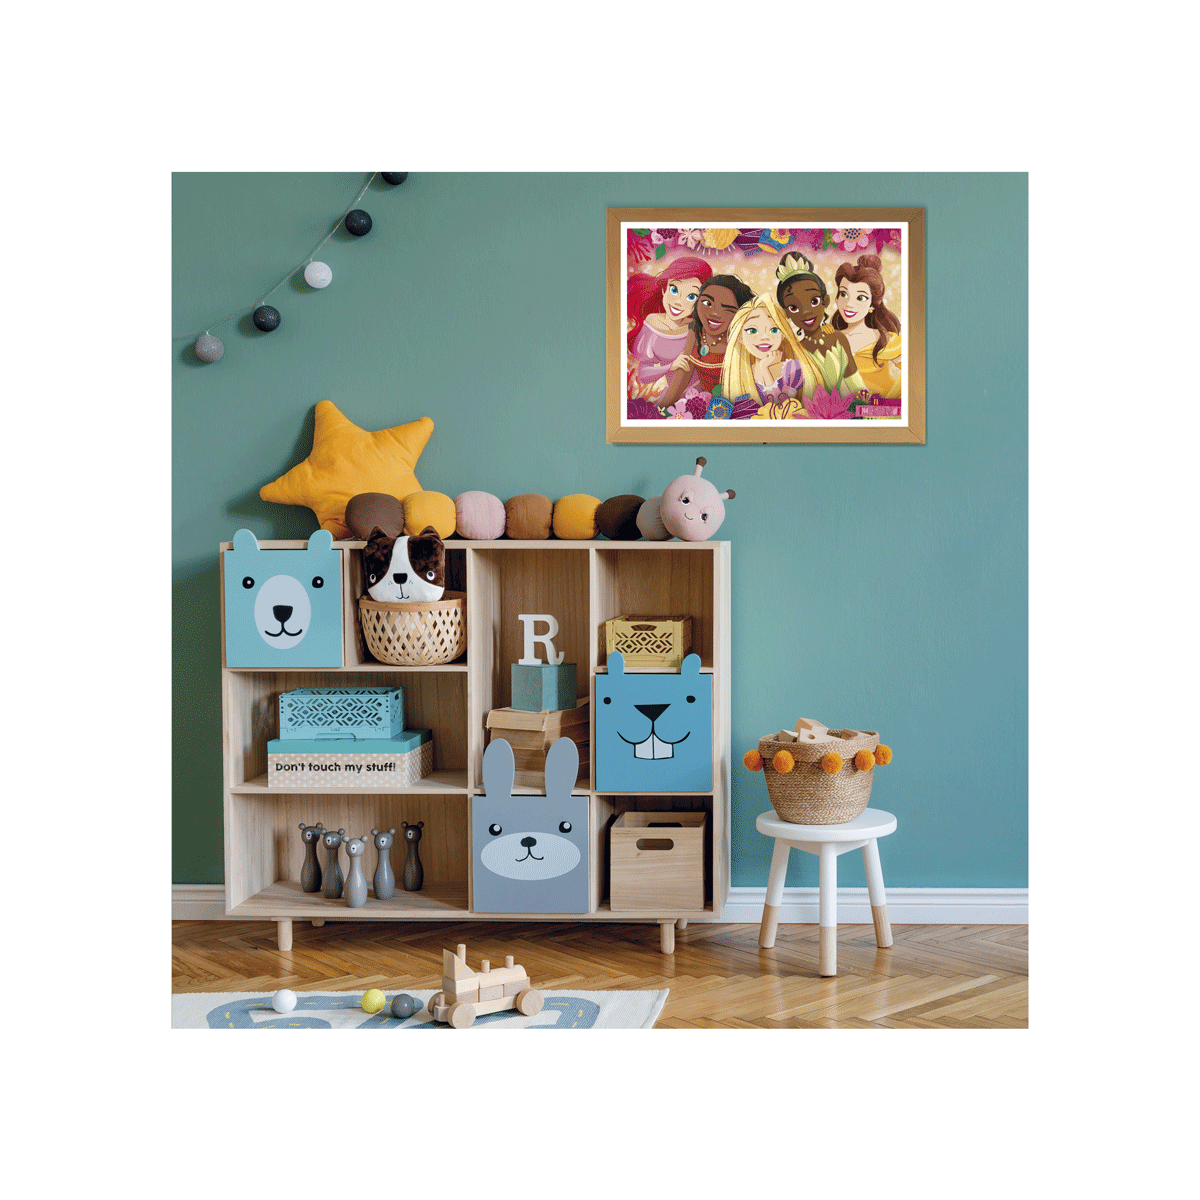 Clementoni supercolor puzzle disney princess - 24 maxi pezzi, puzzle bambini 3 anni - CLEMENTONI, DISNEY PRINCESS